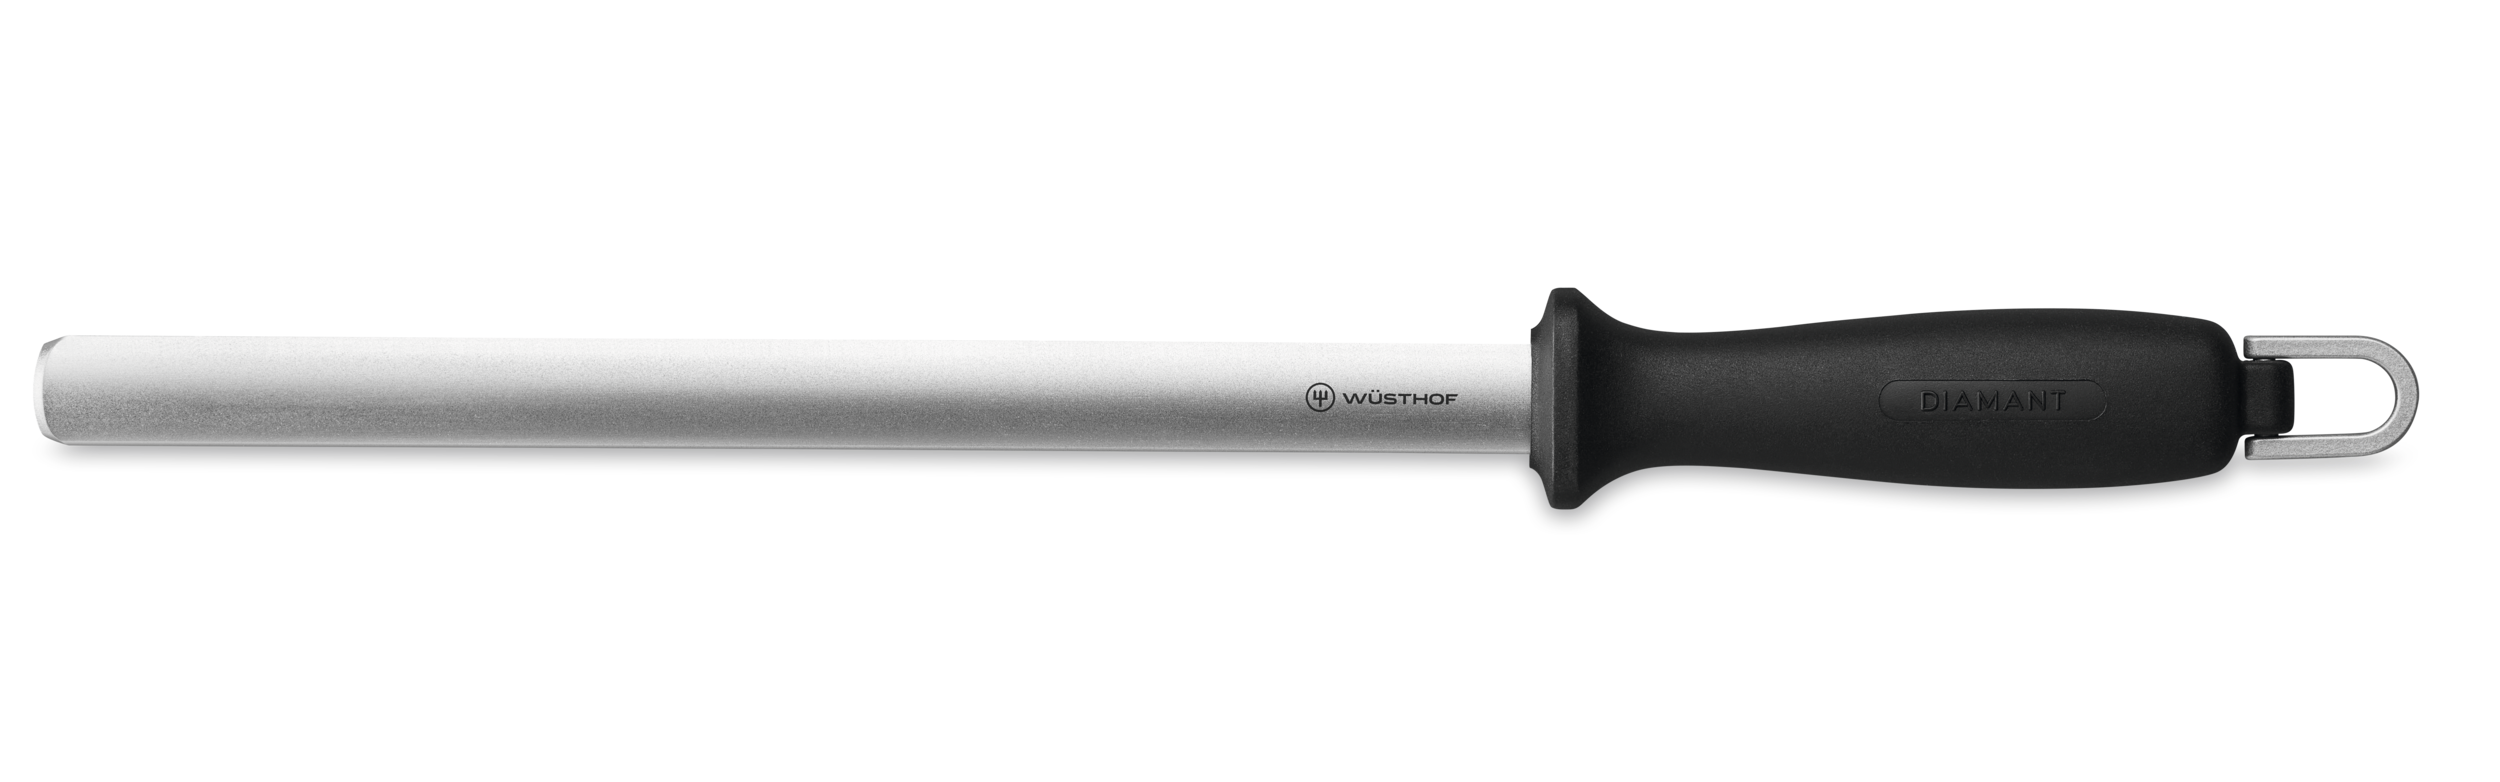 Diamond Knife Sharpener 26 cm  10 inch - WÜSTHOF - Official